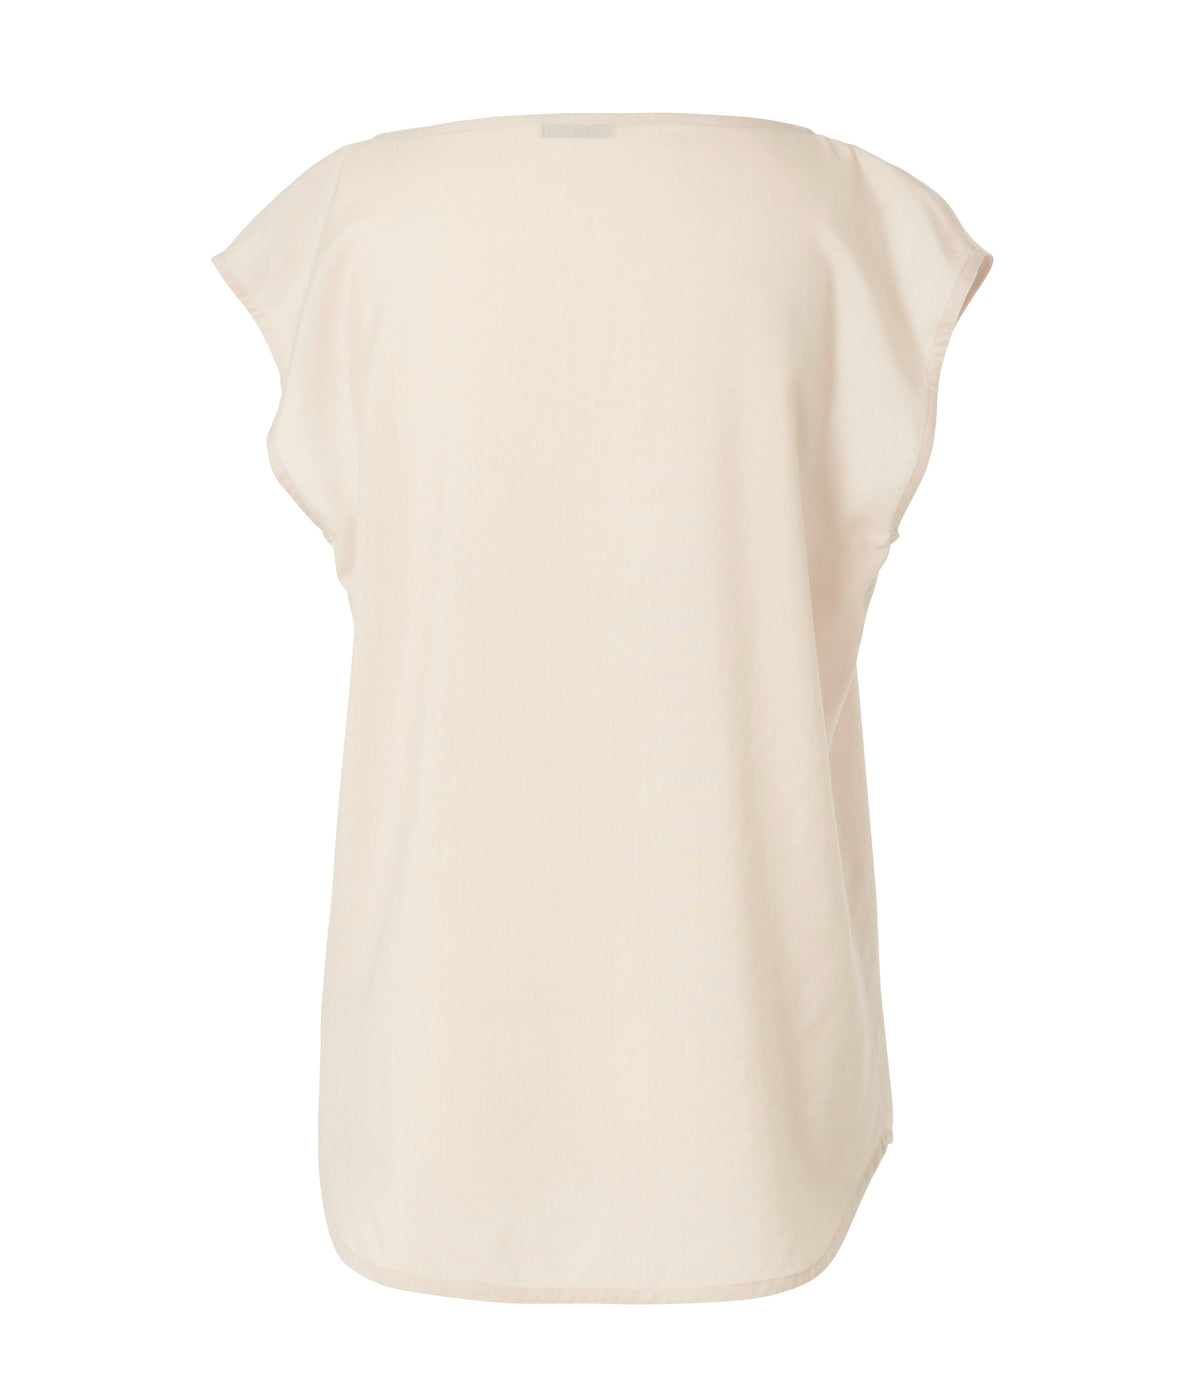 Manrico - Bluse ohne Arm aus Cashmere- Seide in white sand